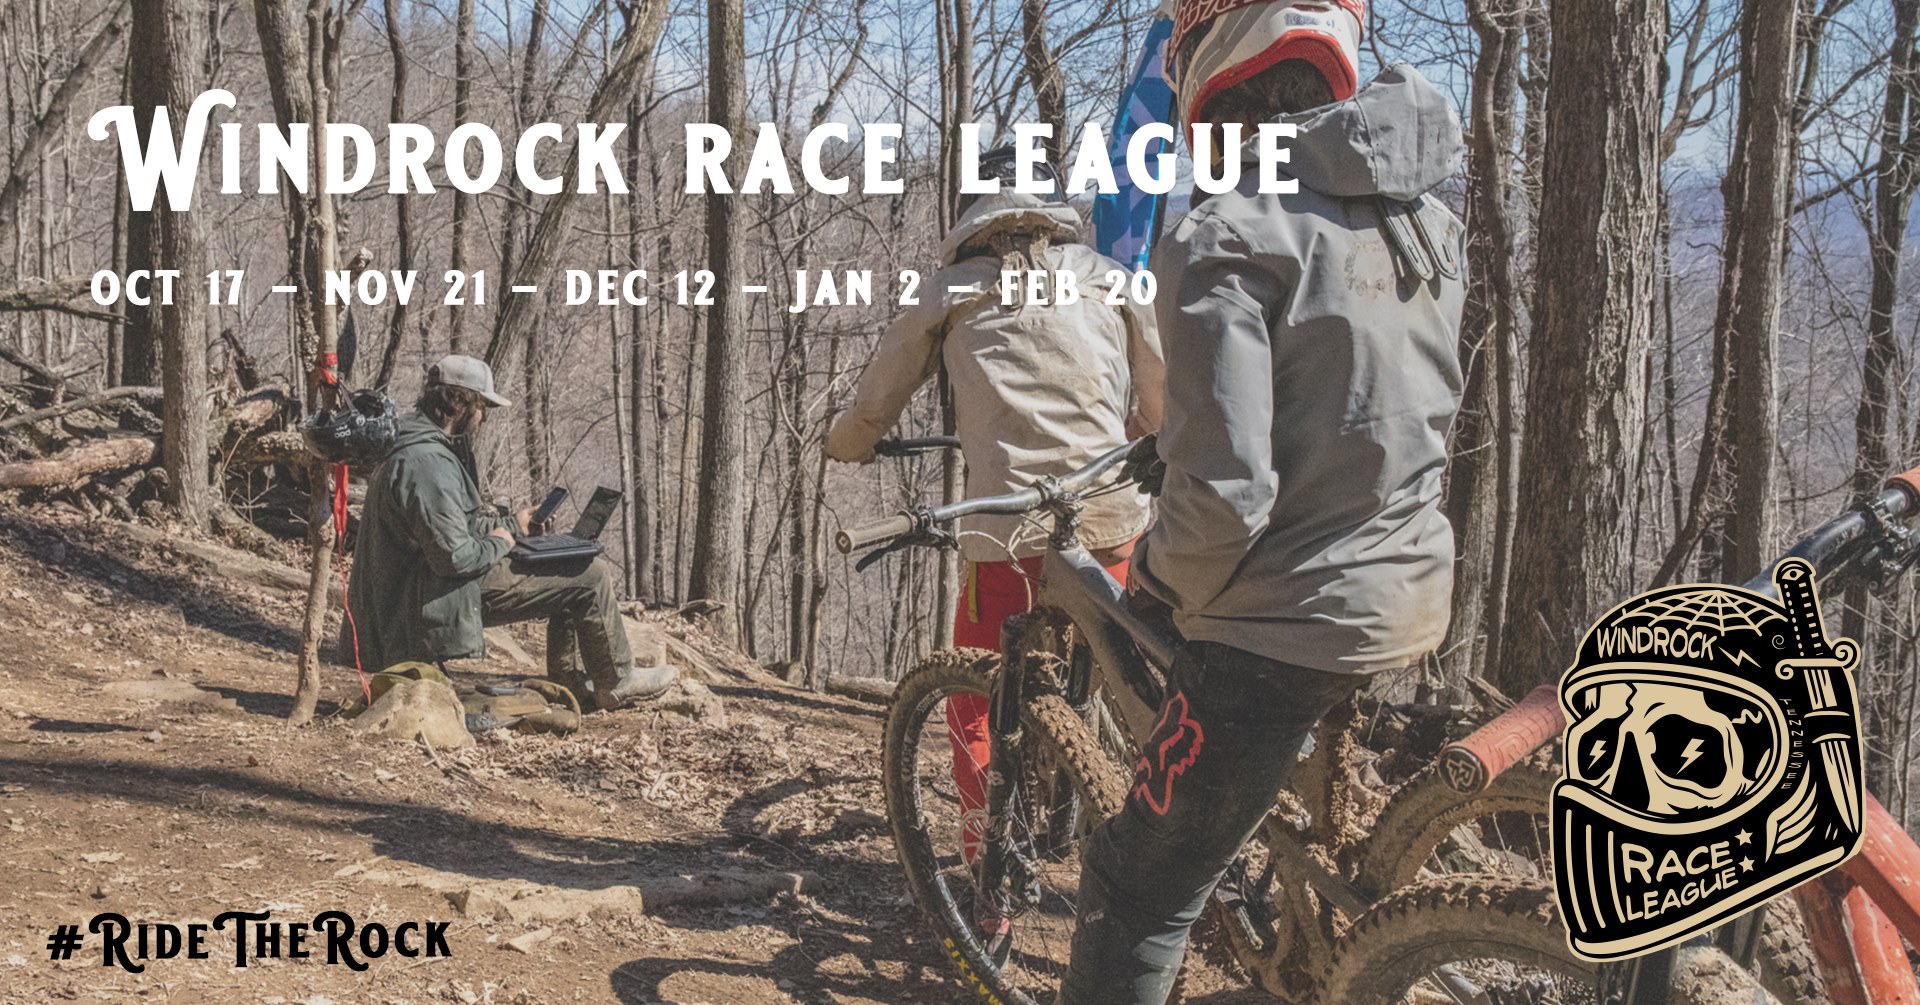 Windrock December Race League